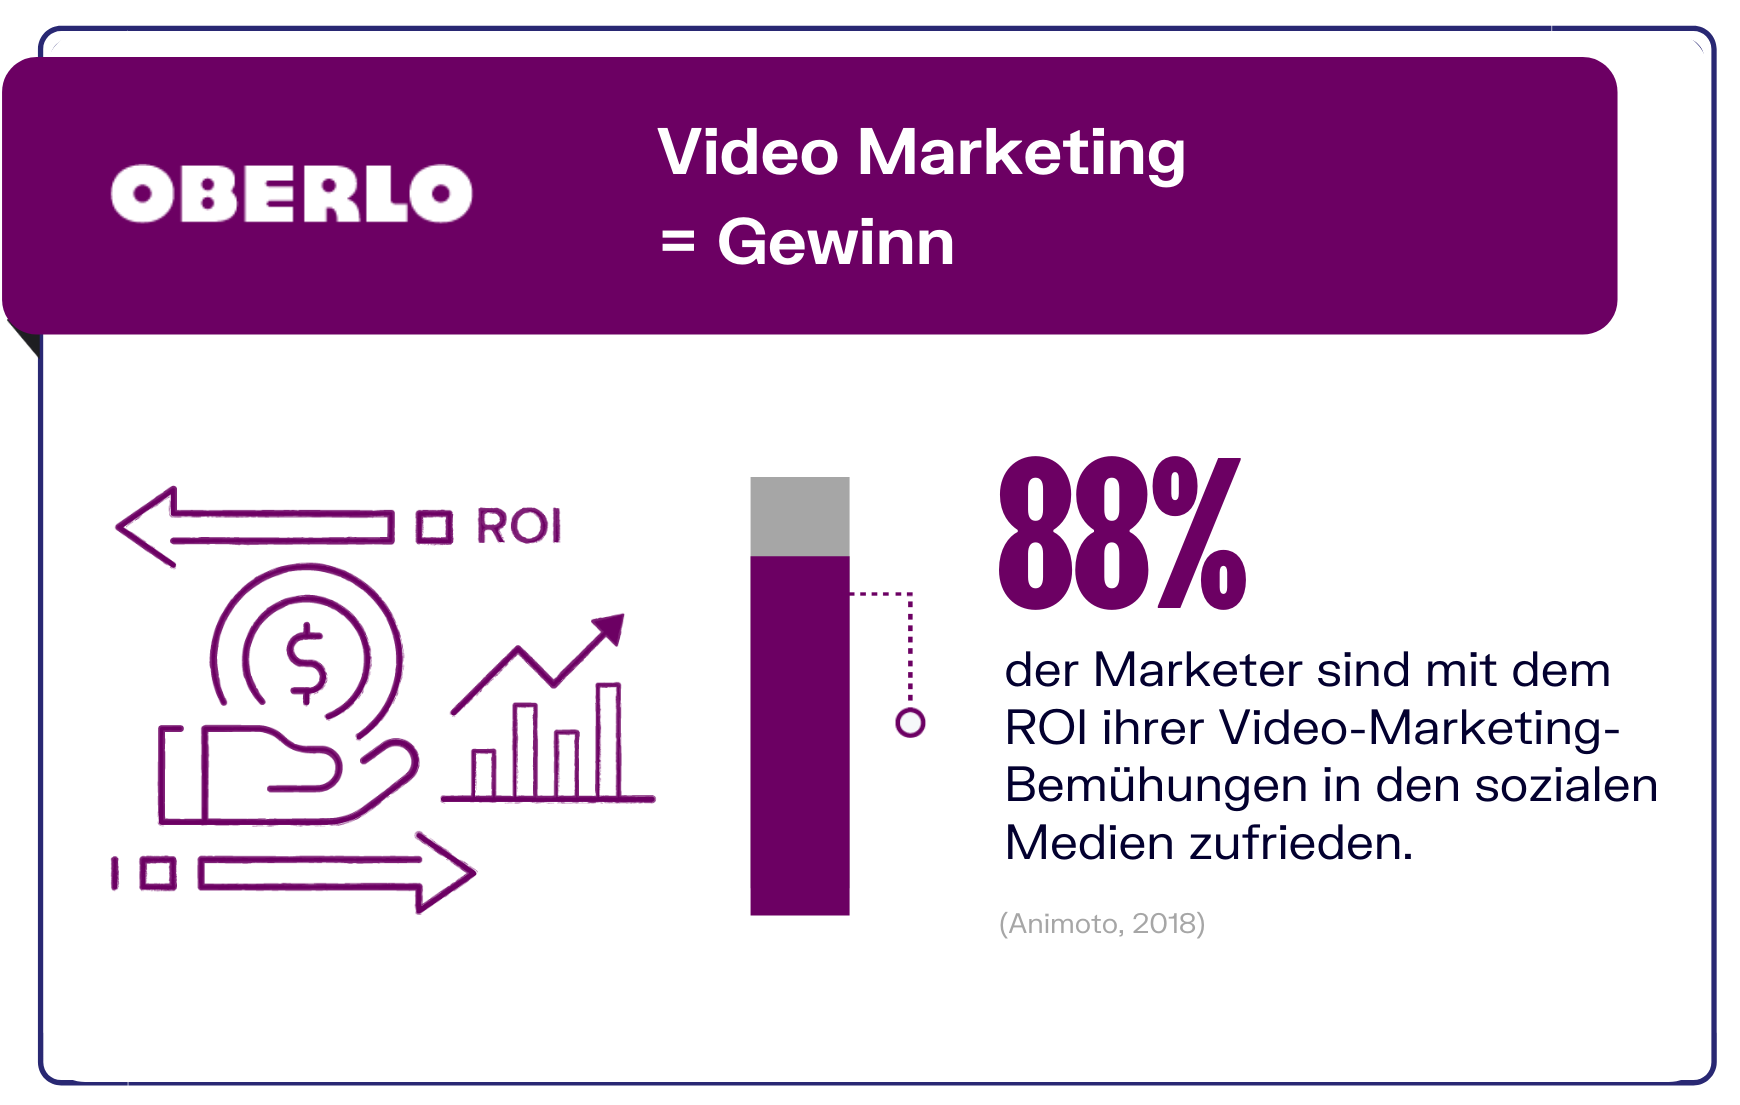 Video Marketing und der ROI